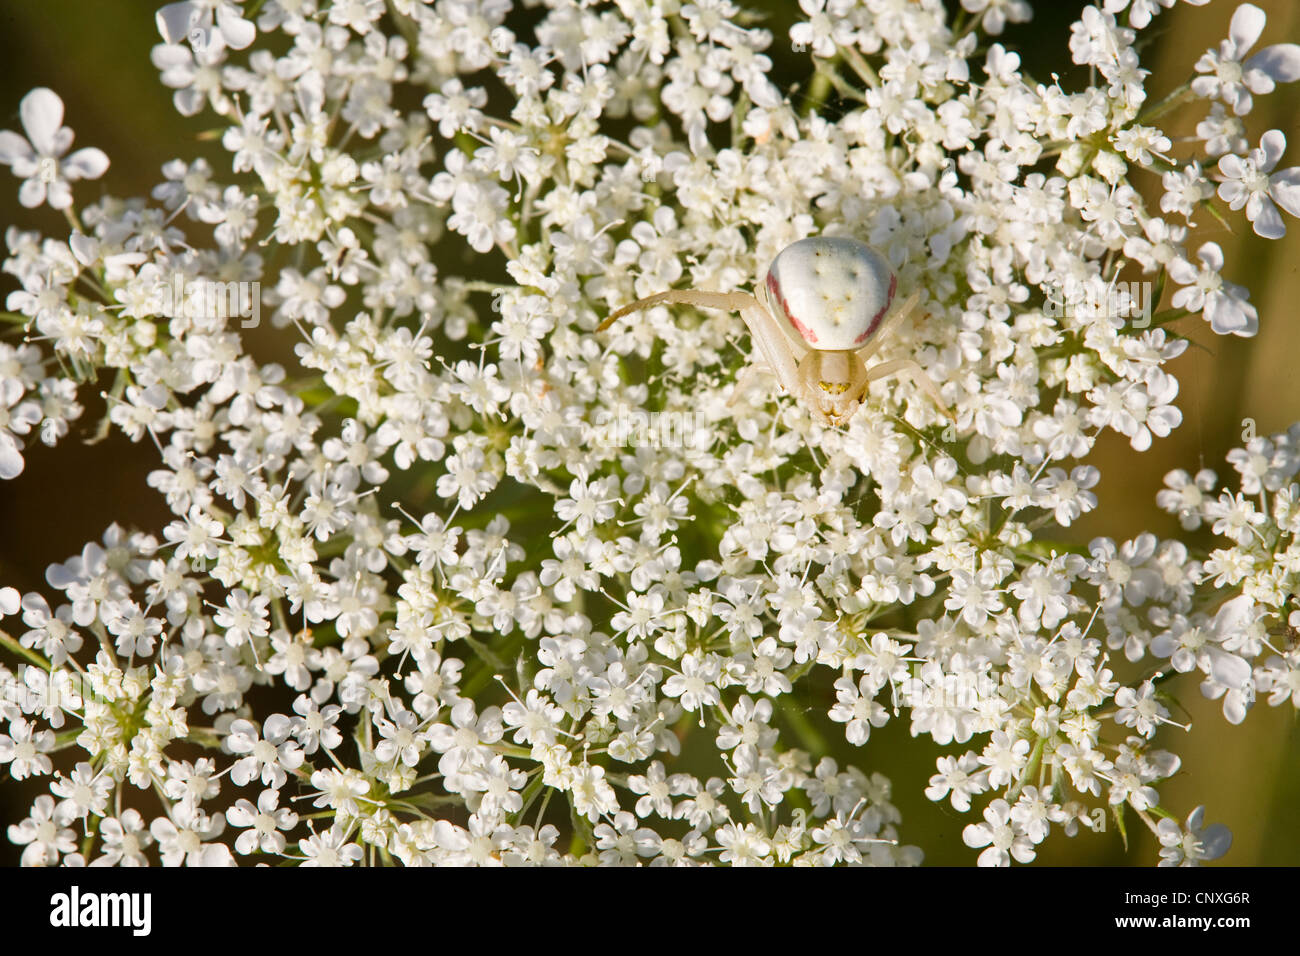 Houghton (Misumena vatia araignée crabe), bien camouflée personne assise sur l'inflorescence de carotte sauvage, de l'Allemagne, Bade-Wurtemberg Banque D'Images